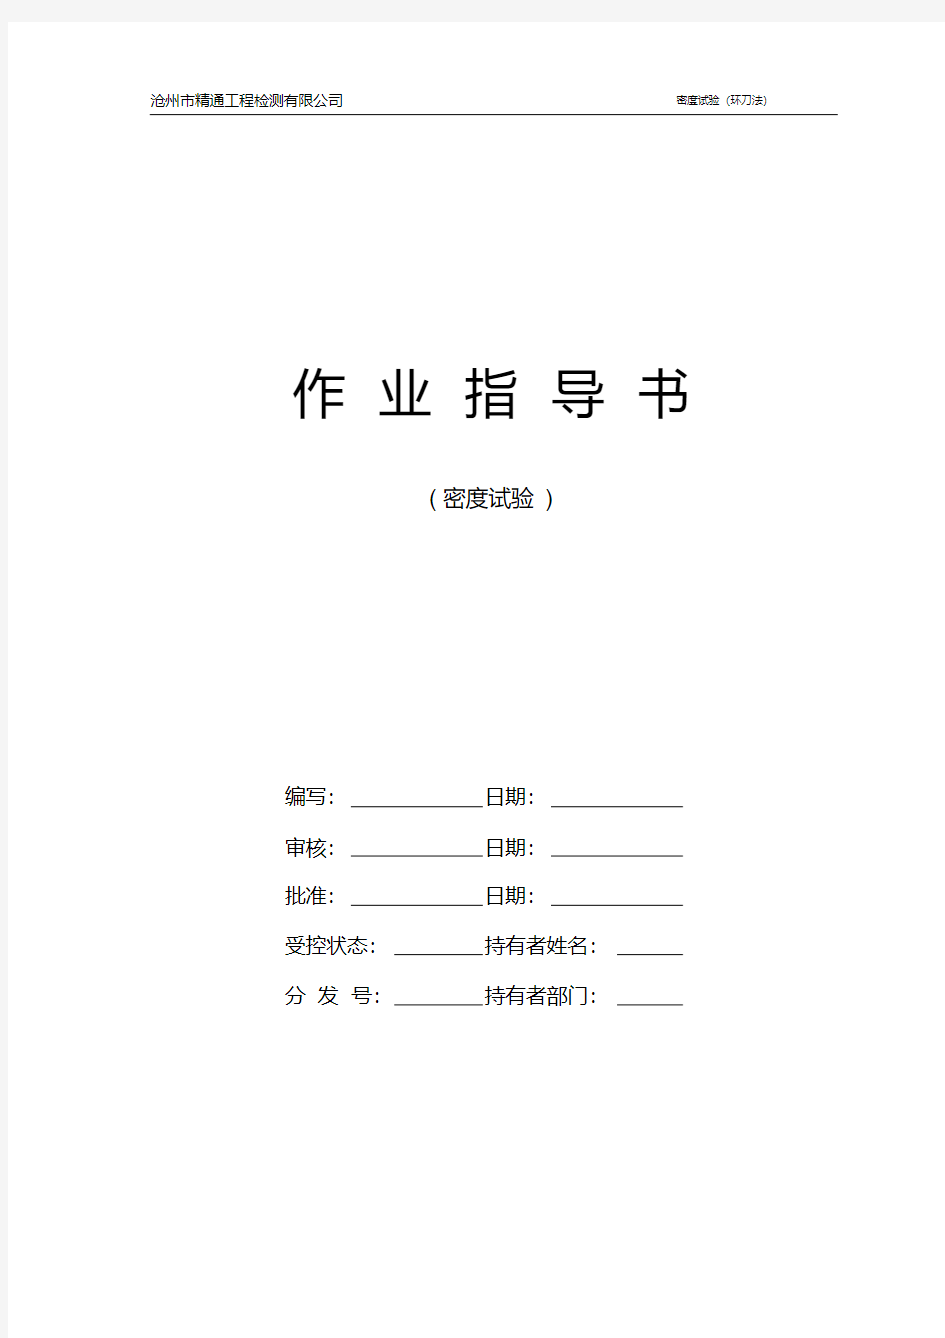 最新环刀法试验作业指导书.pdf